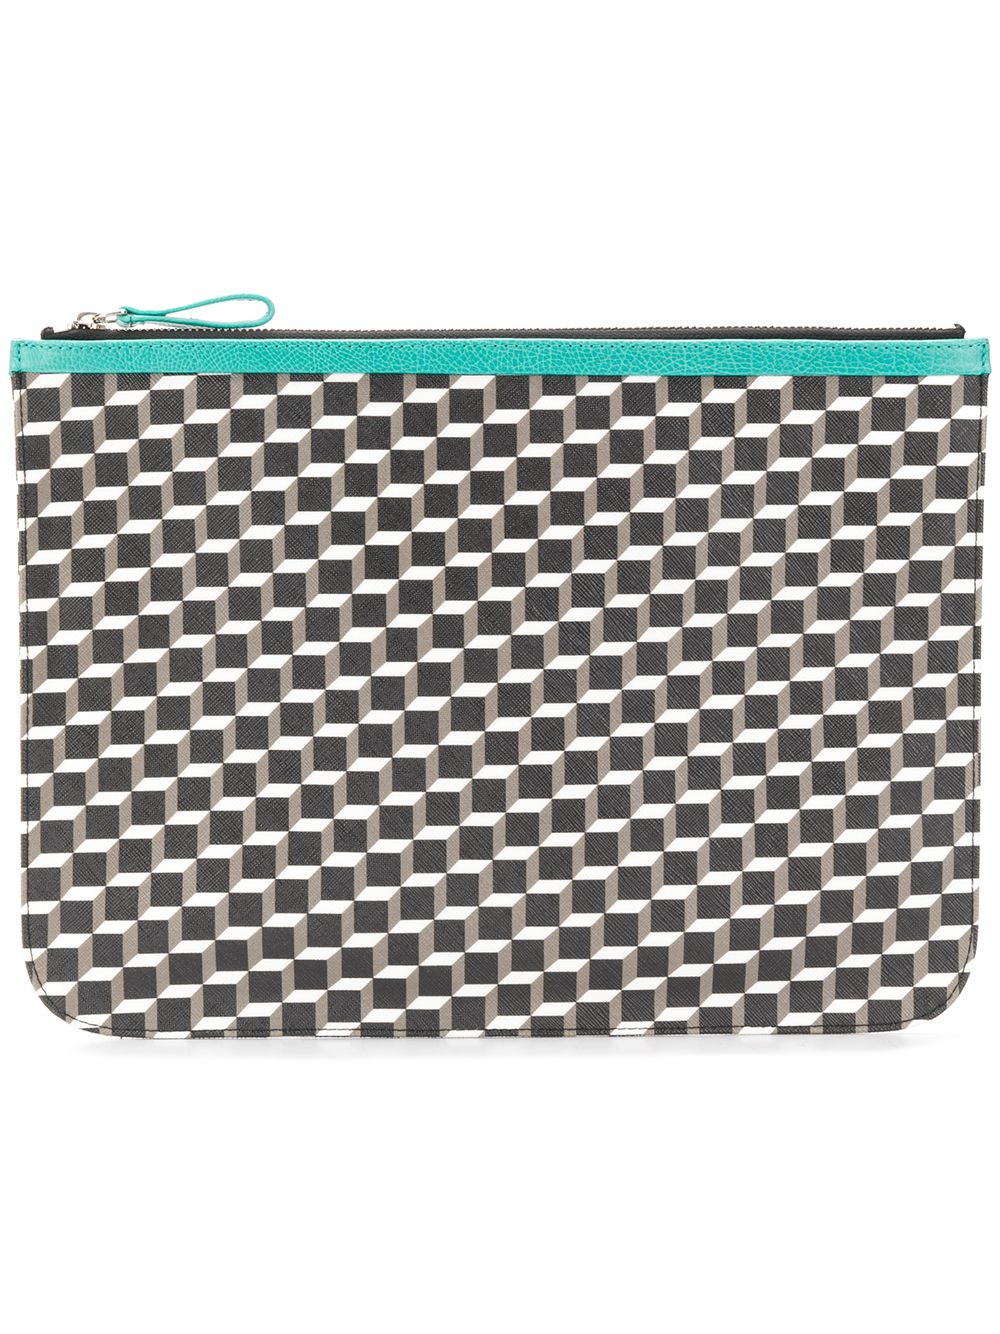 PIERRE HARDY geometric patterned clutch bag